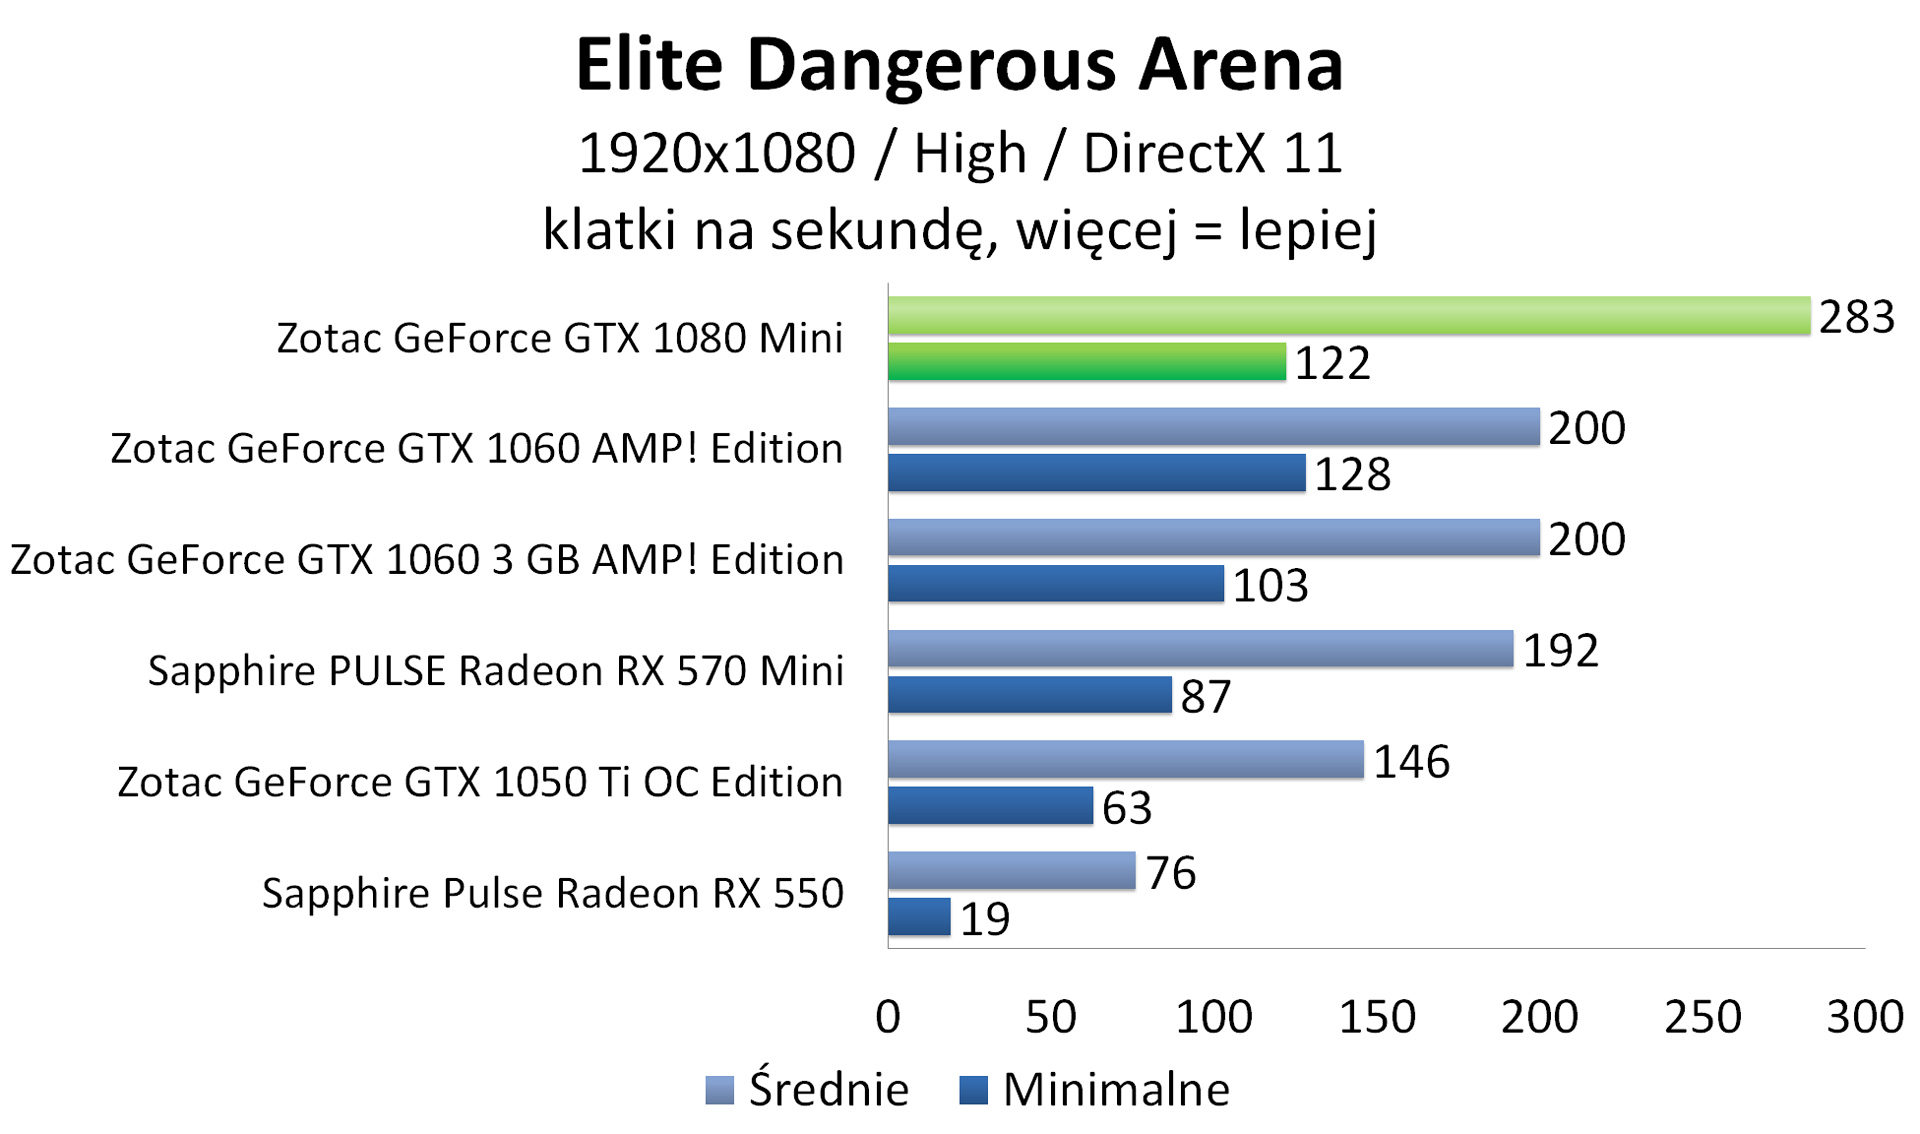 Zotac GeForce GTX 1080 Mini - Elite Dangerous